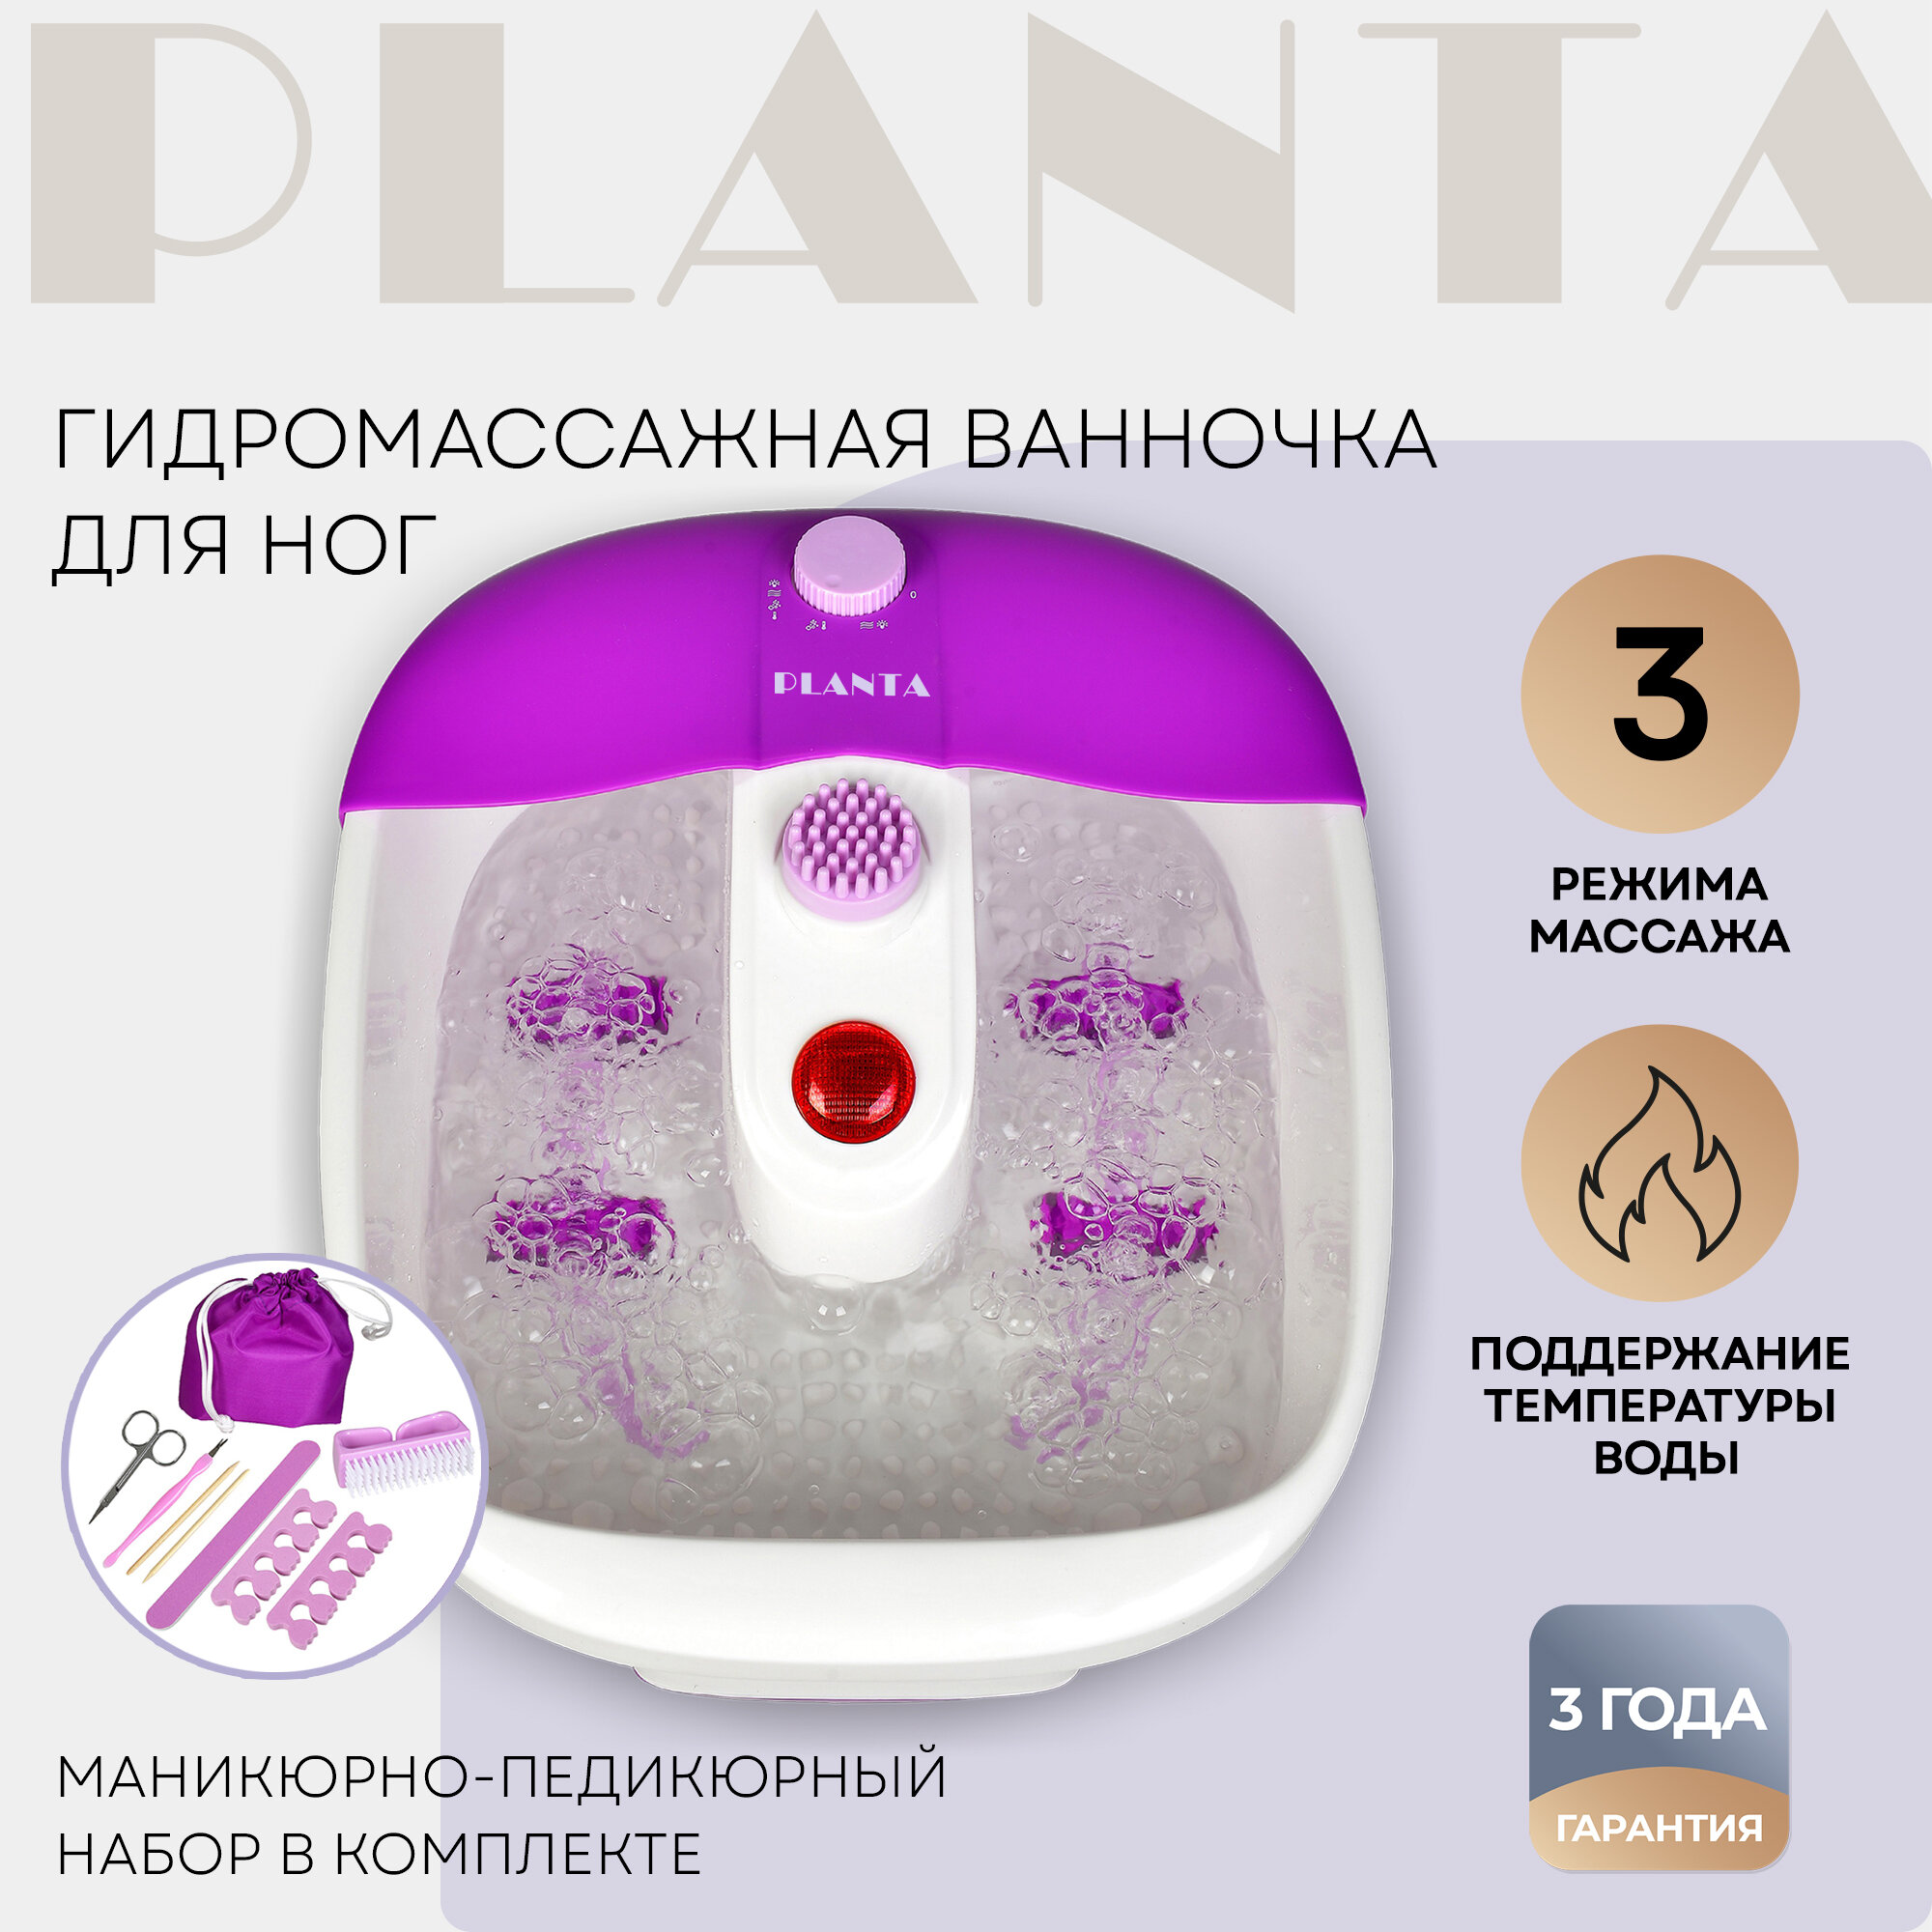 Гидромассажная ванночка Planta Spa Salon